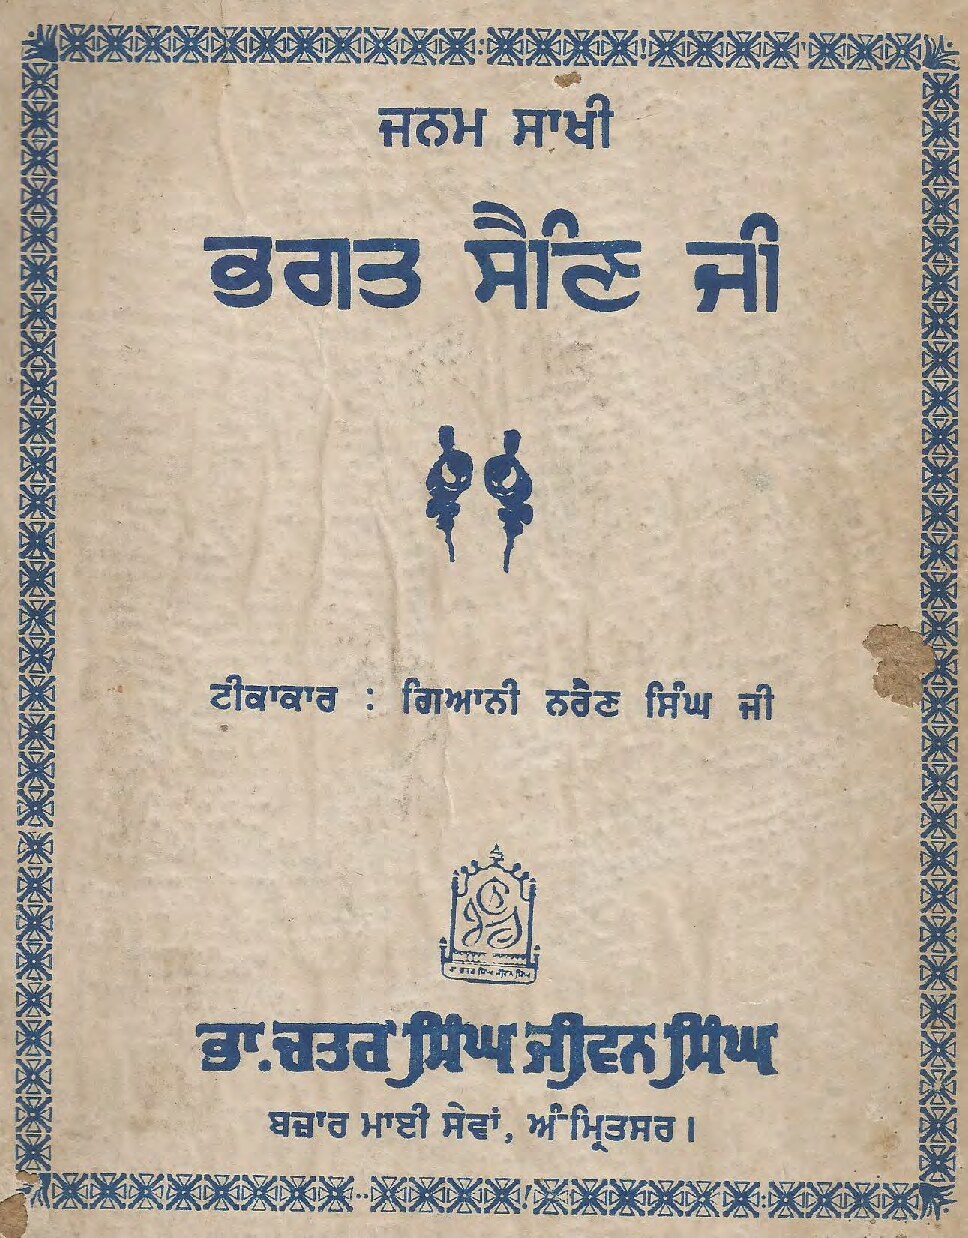 ਭਗਤ ਸੈਣ ਜੀ - Bhagat Sain ji